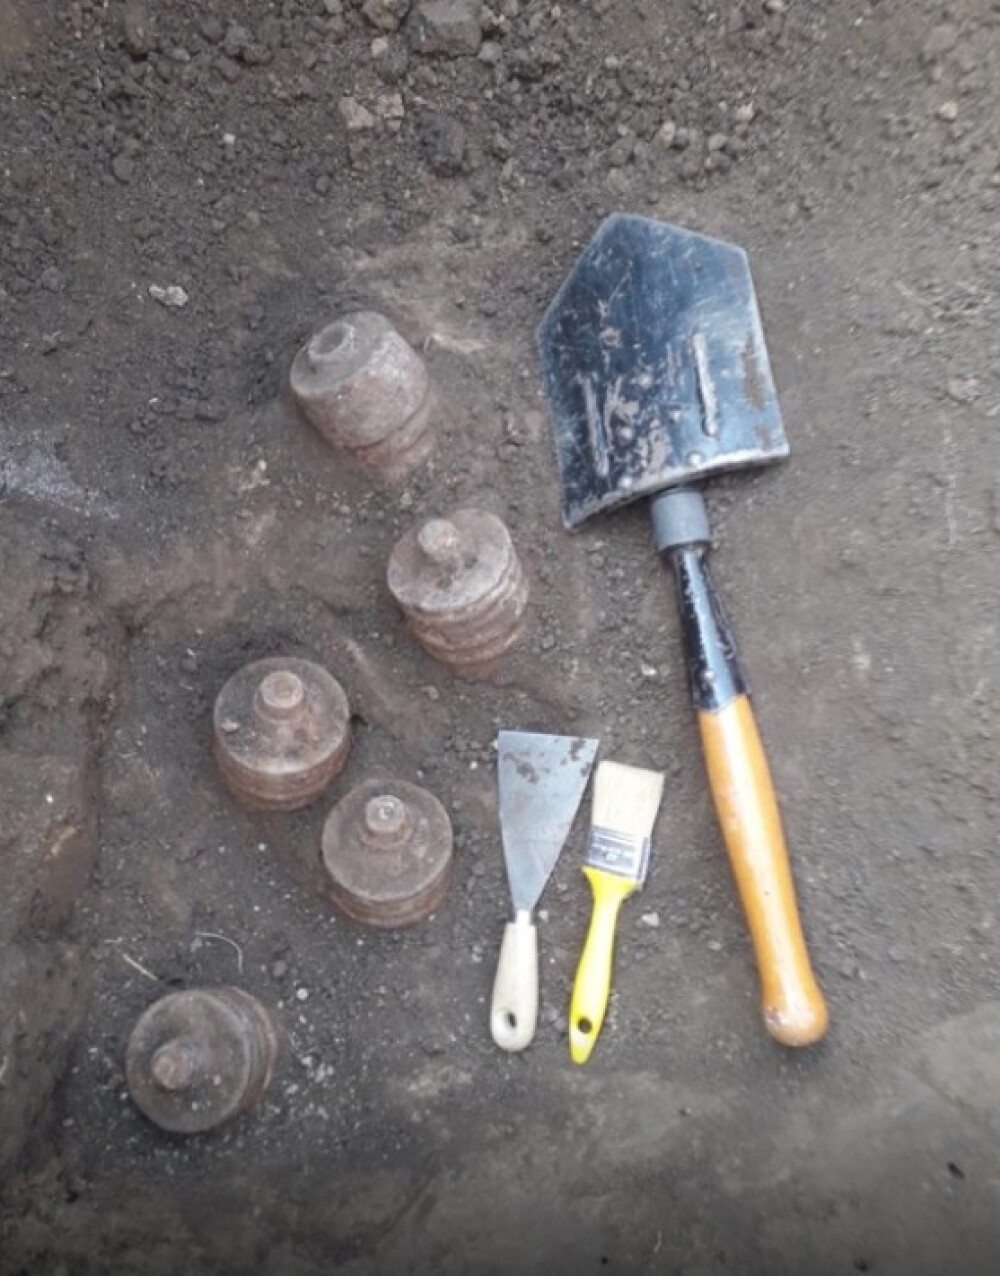 Zeci de proiectile, gloanţe şi cartuşe, descoperite în cimitirul din Bârlad. De unde provin - Imaginea 2